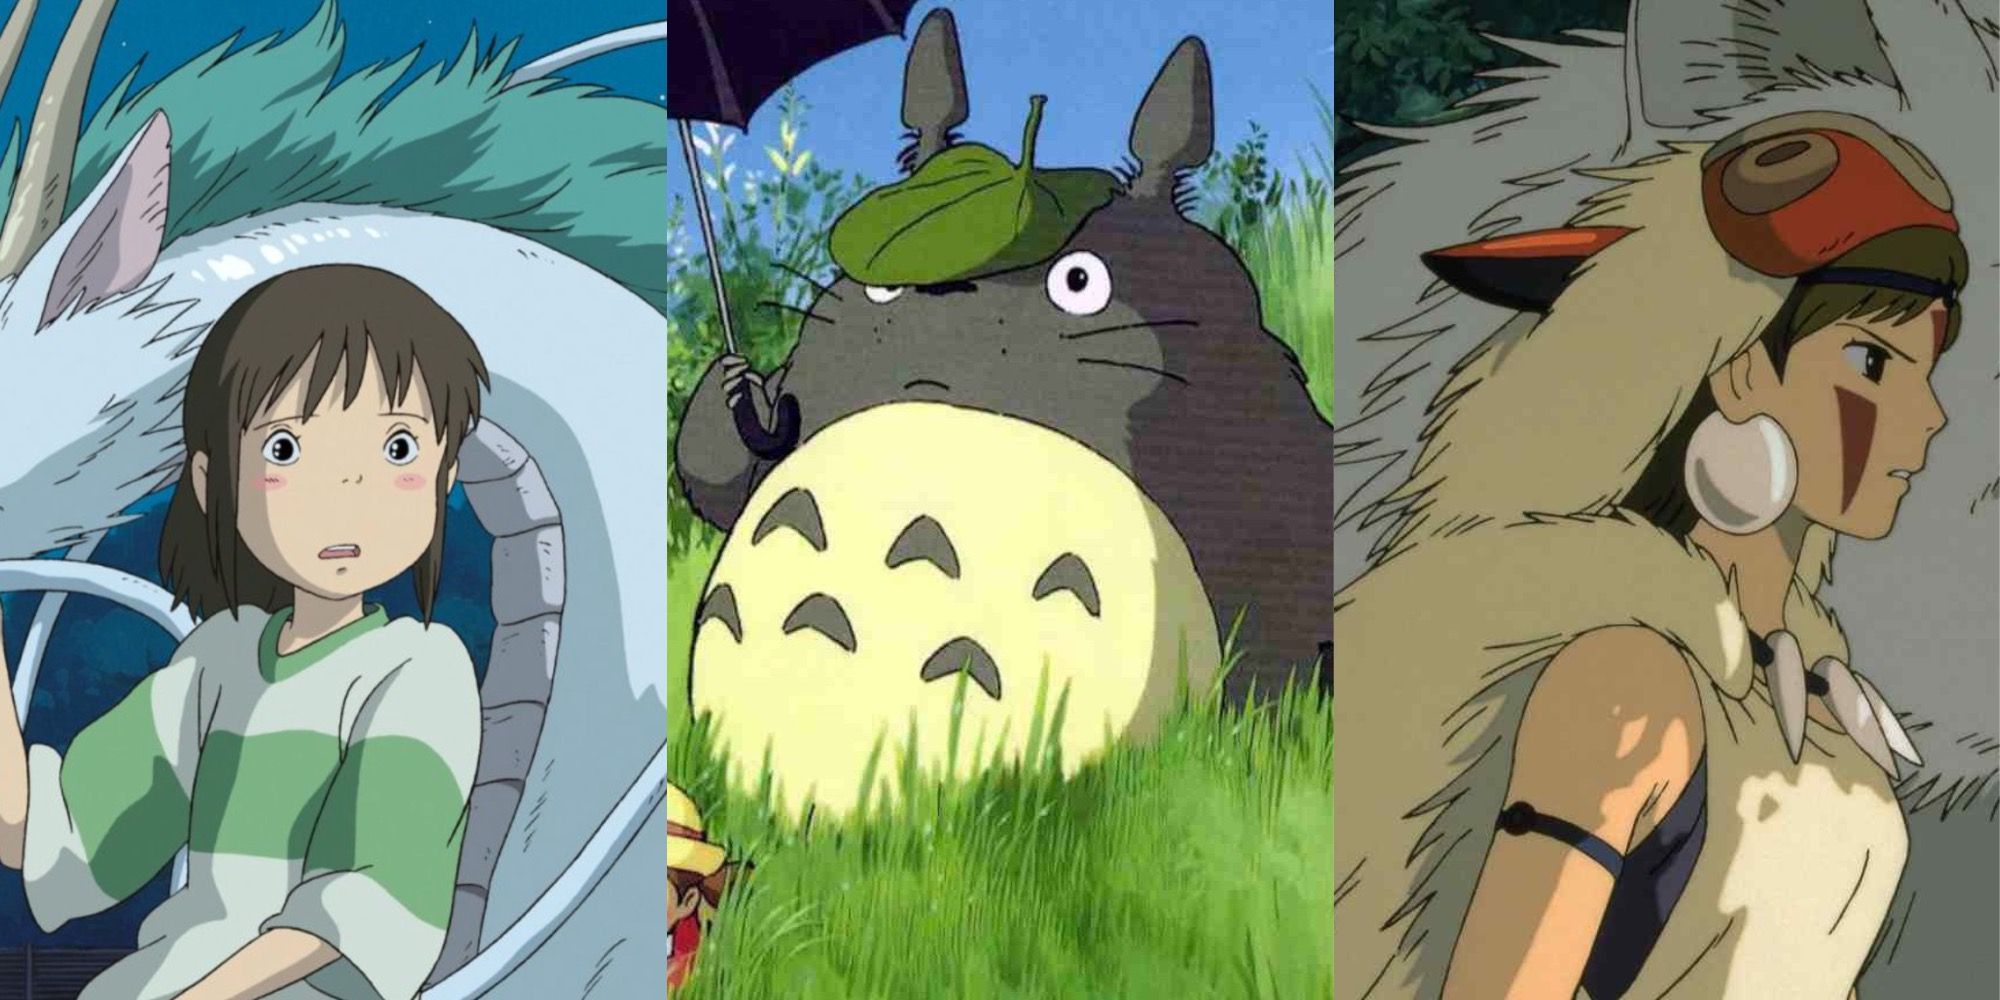 10 Best Studio Ghibli Movies Ranked By IMDb